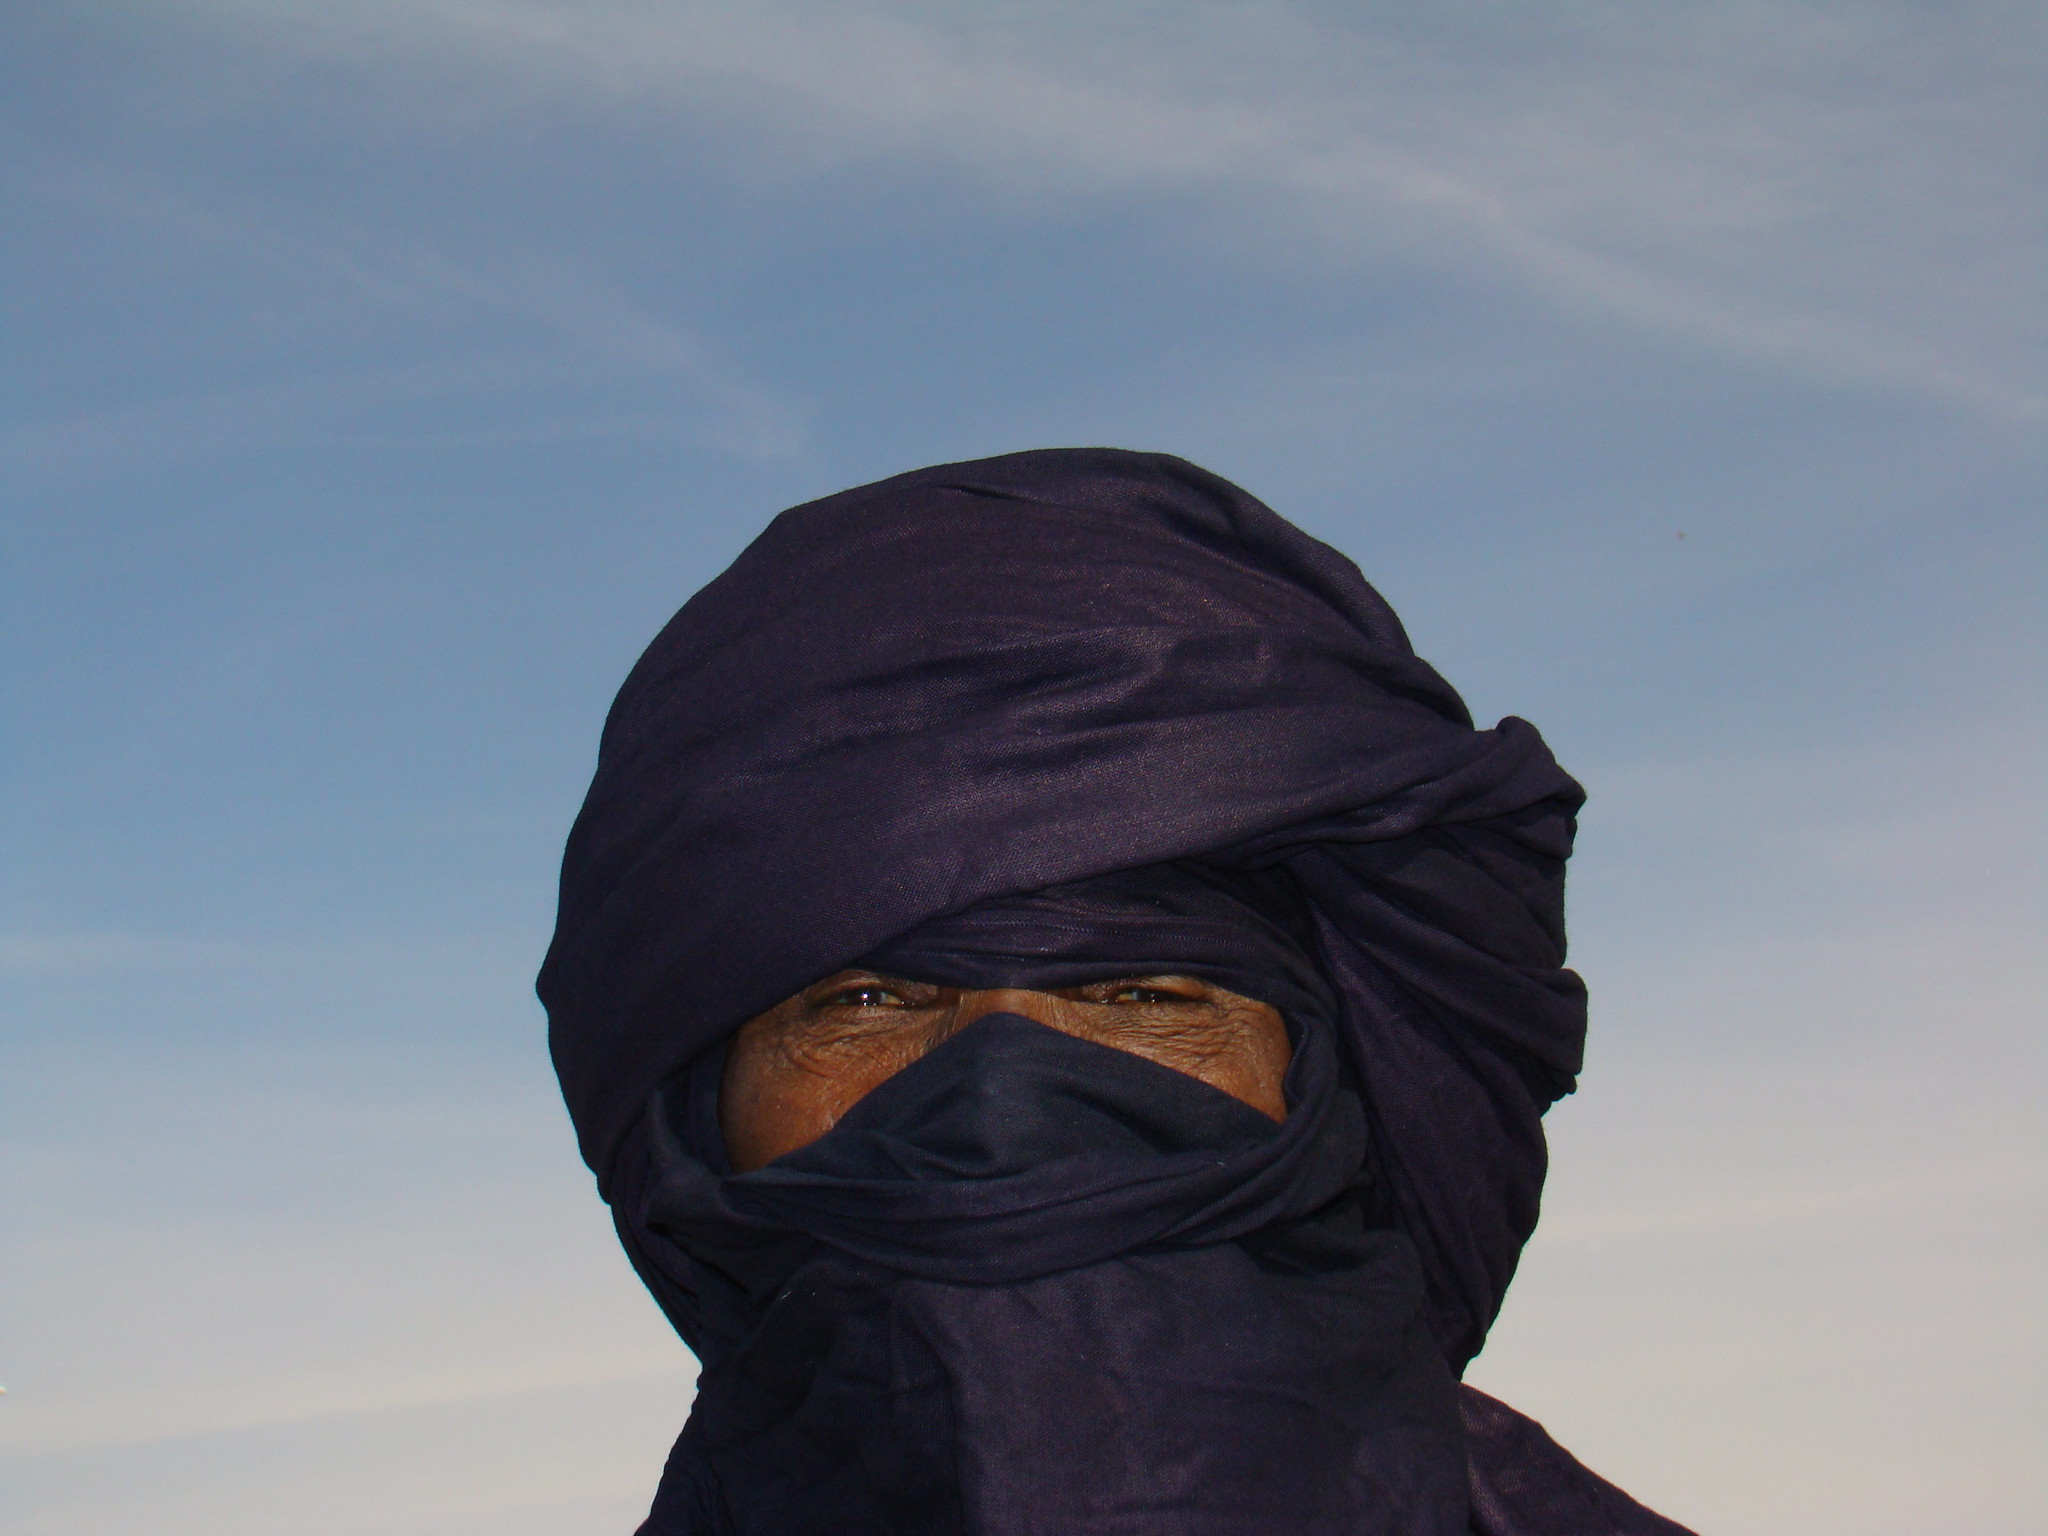 hombre con turbante tagelmust tuareg su gente Libia 25